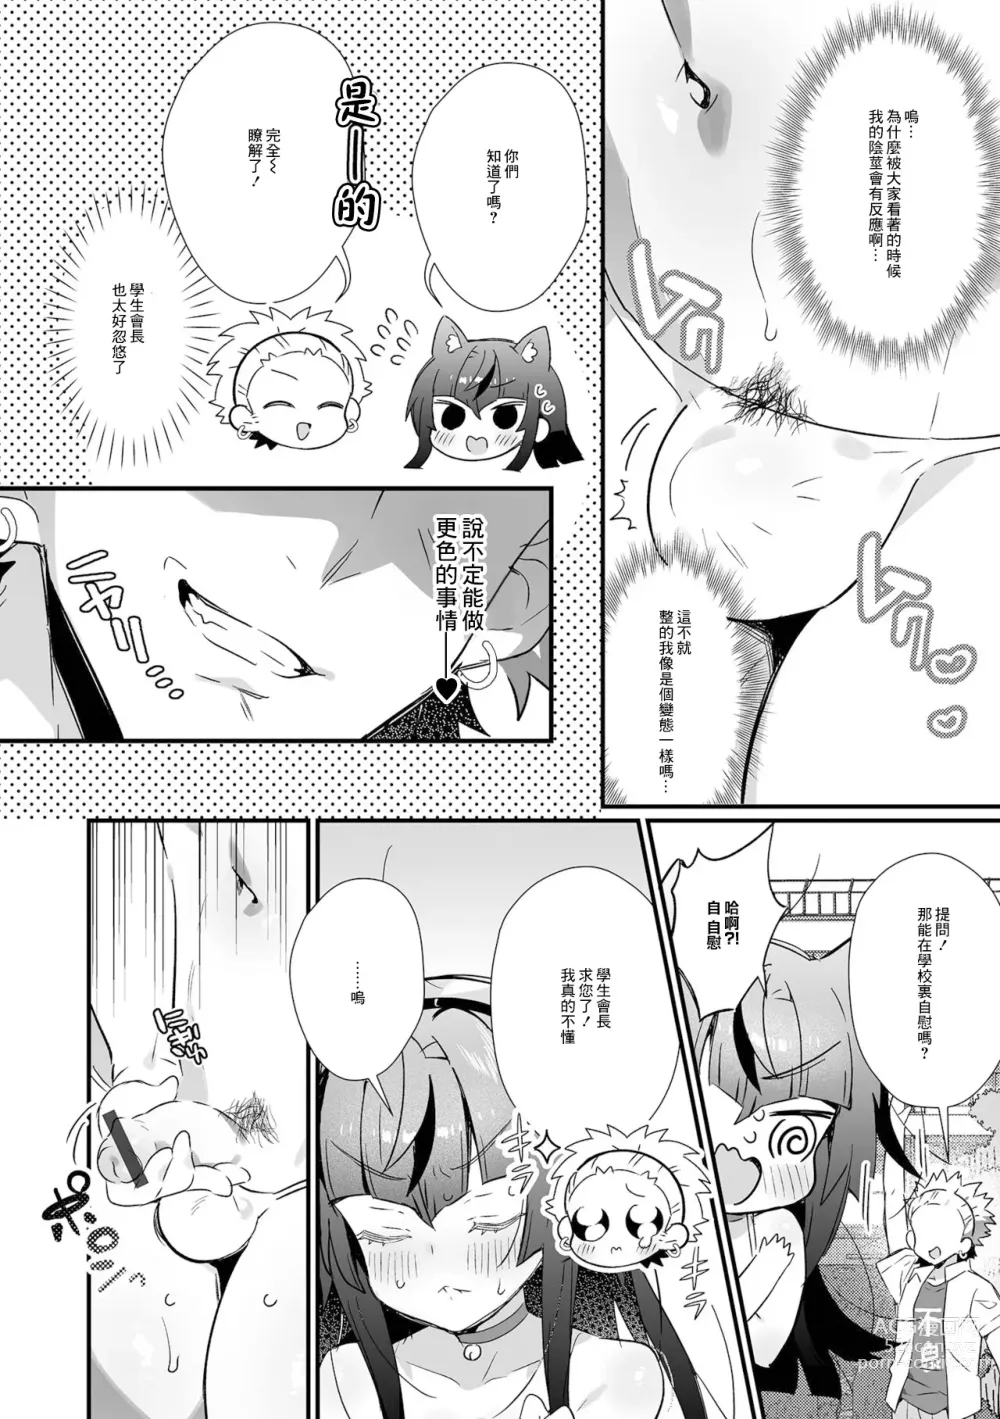 Page 4 of manga Seitokaichou no Koushuu Eroero Fuuki Shidou